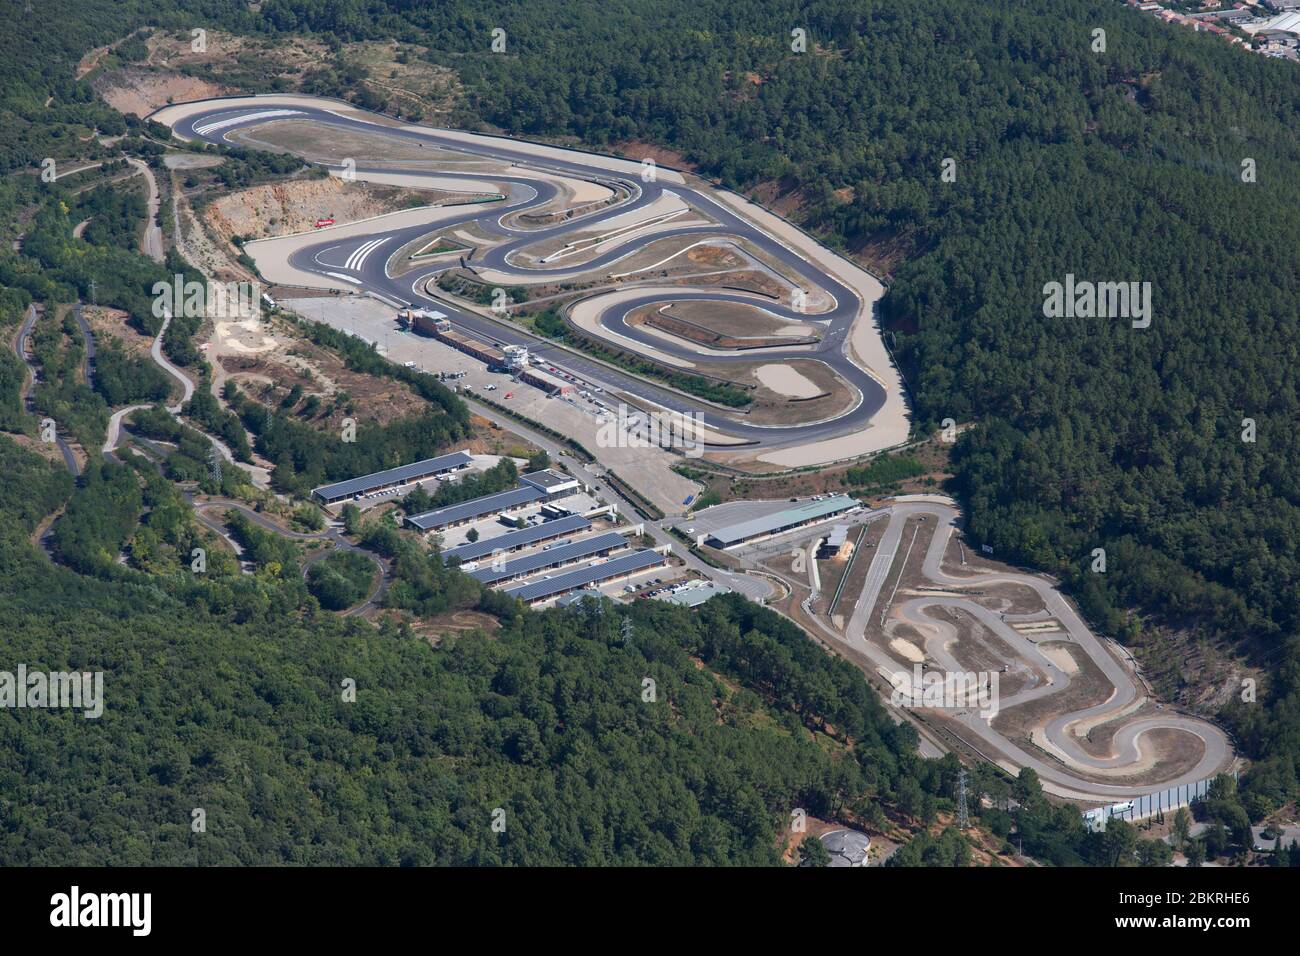 France, Gard, Ales, Ales Cévennes centre mécanique, complexe automobile  comprenant cinq et#x201c; asphalte et#x201d; et cinq et#x201c; saleté  et#x201d; équipement, circuit de vitesse sur route, circuit de karting et  pistes de rallye (